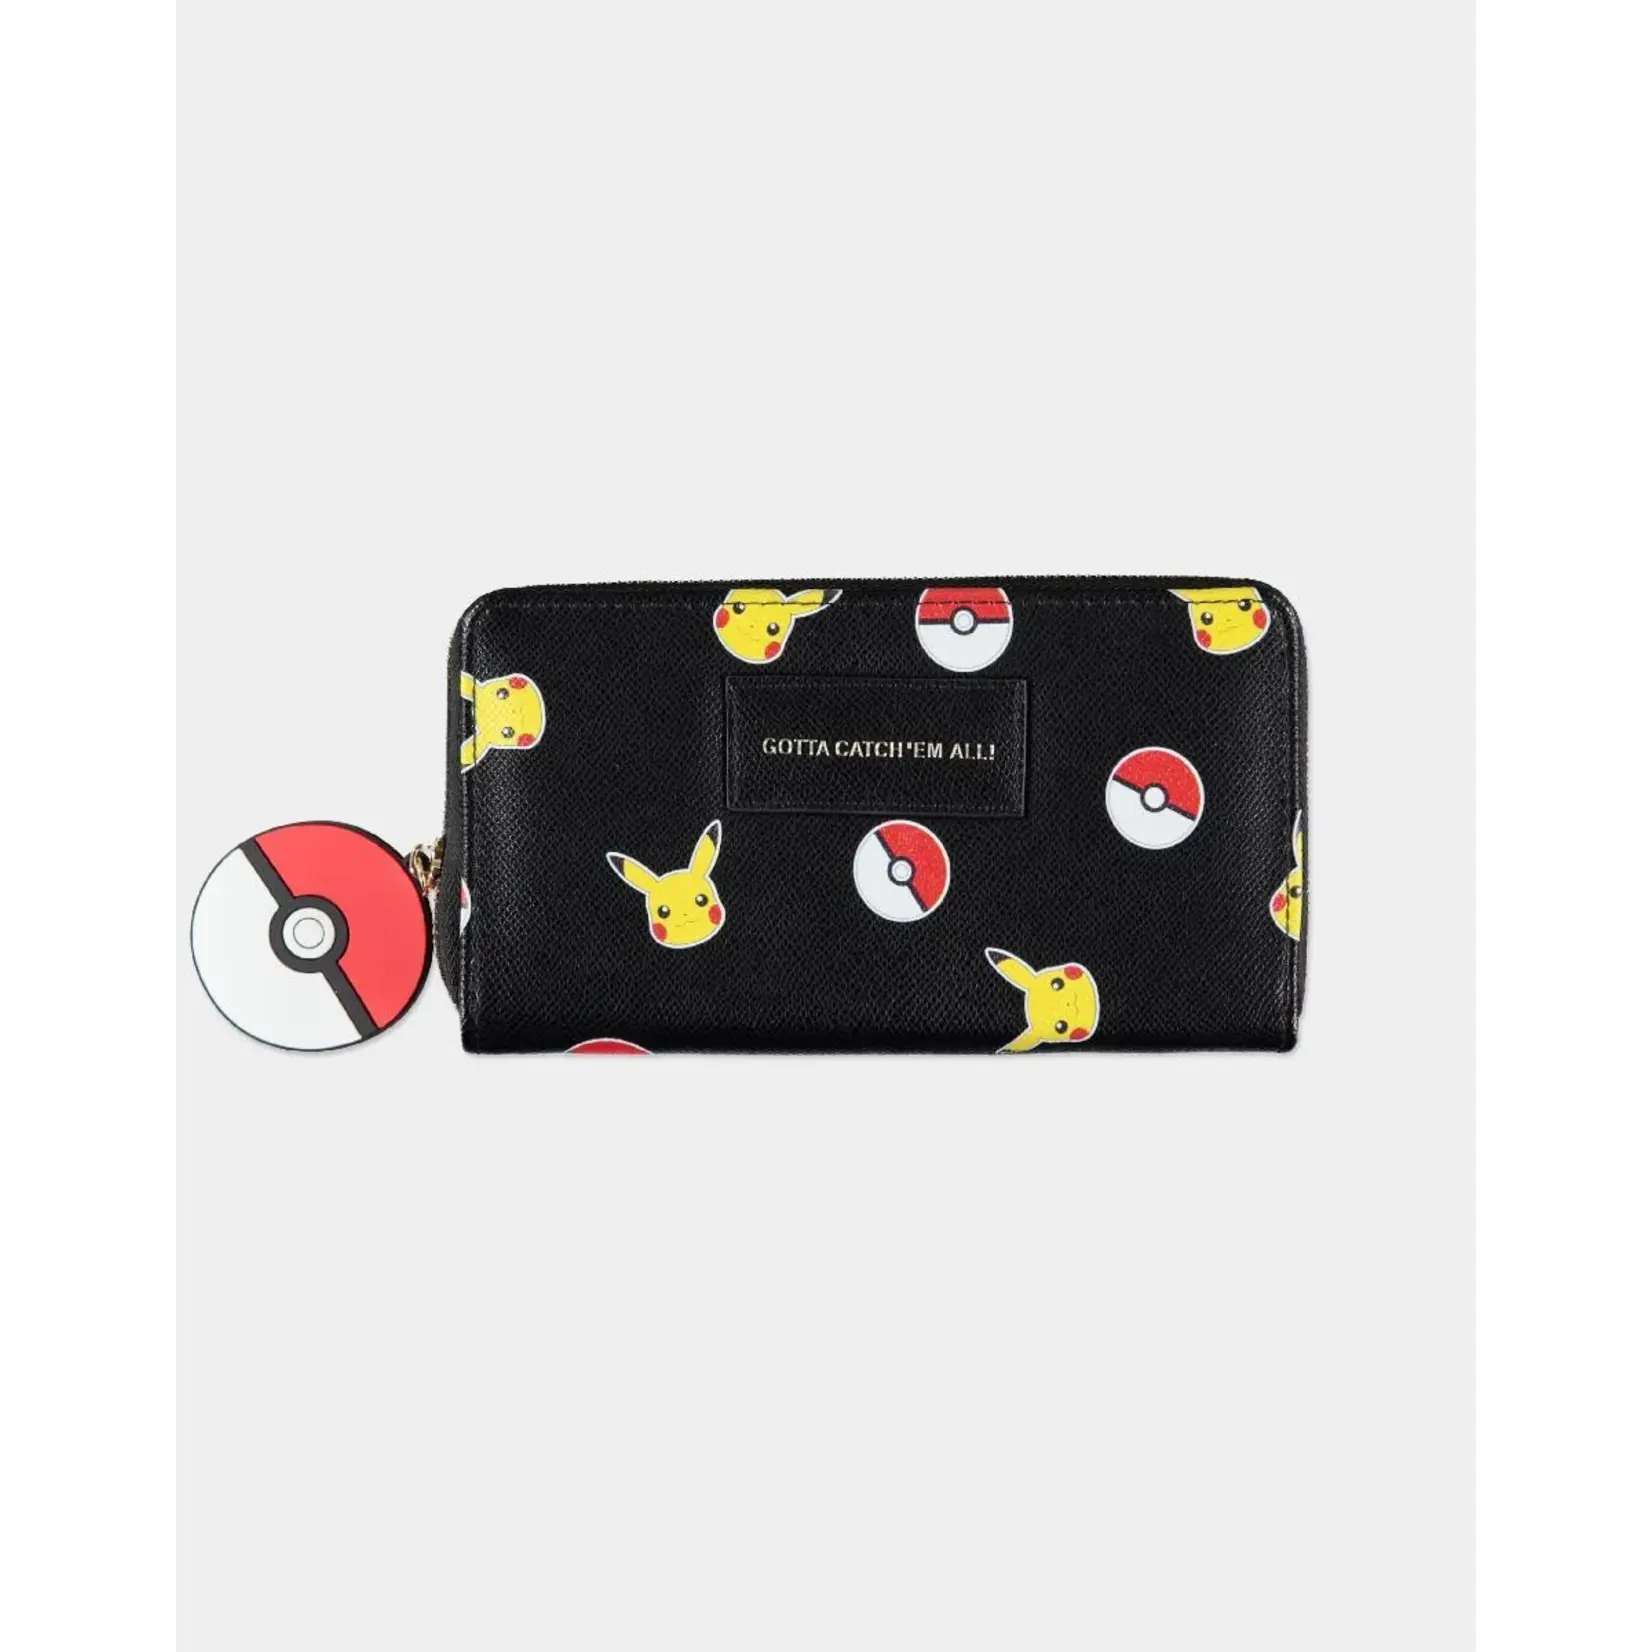 POKEMON - Pikachu - Wallet